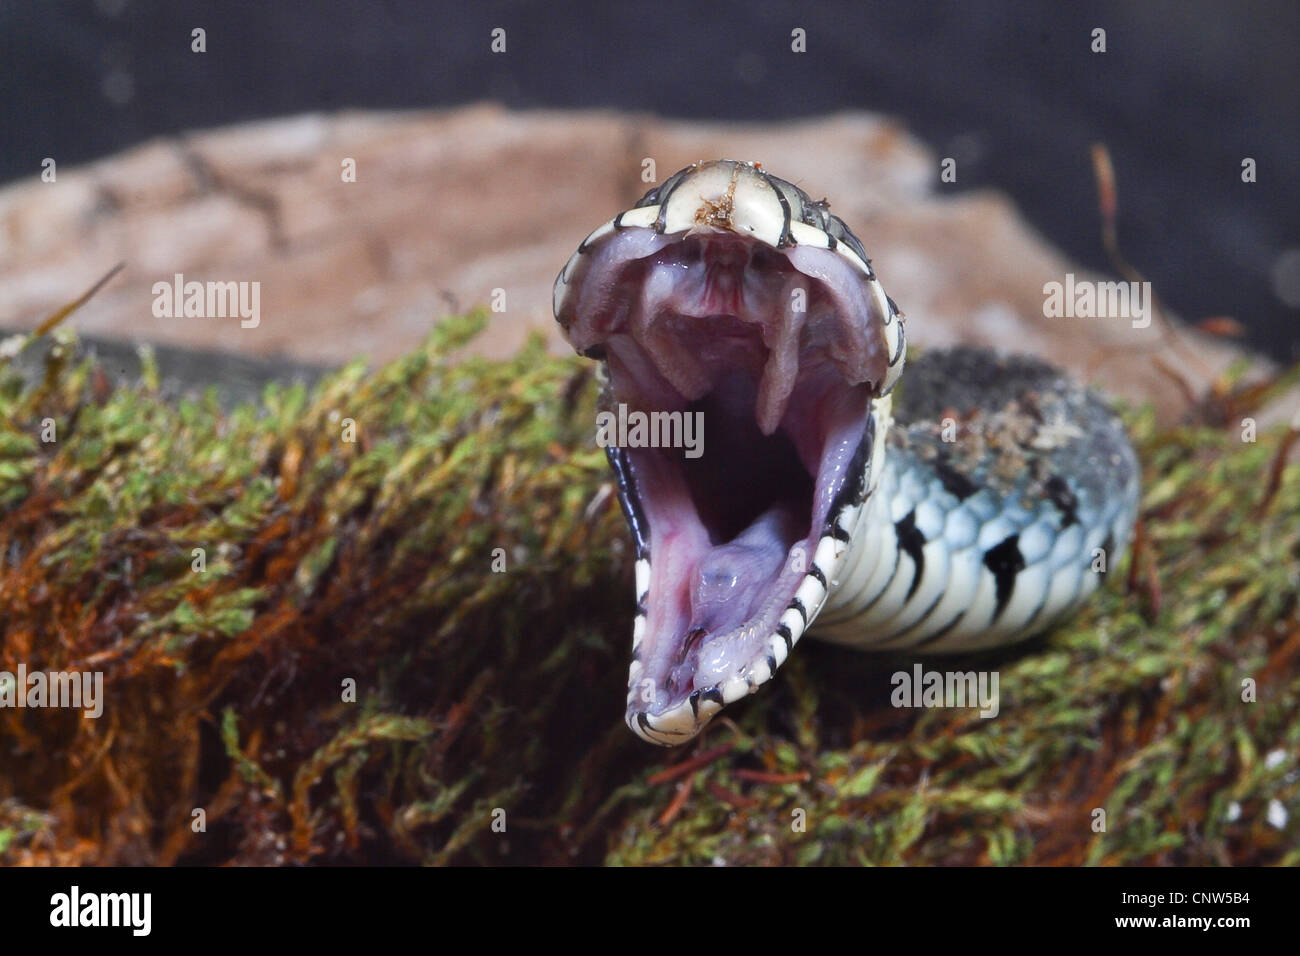 Couleuvre à collier (Natrix natrix), la bouche grande ouverte, Allemagne Banque D'Images